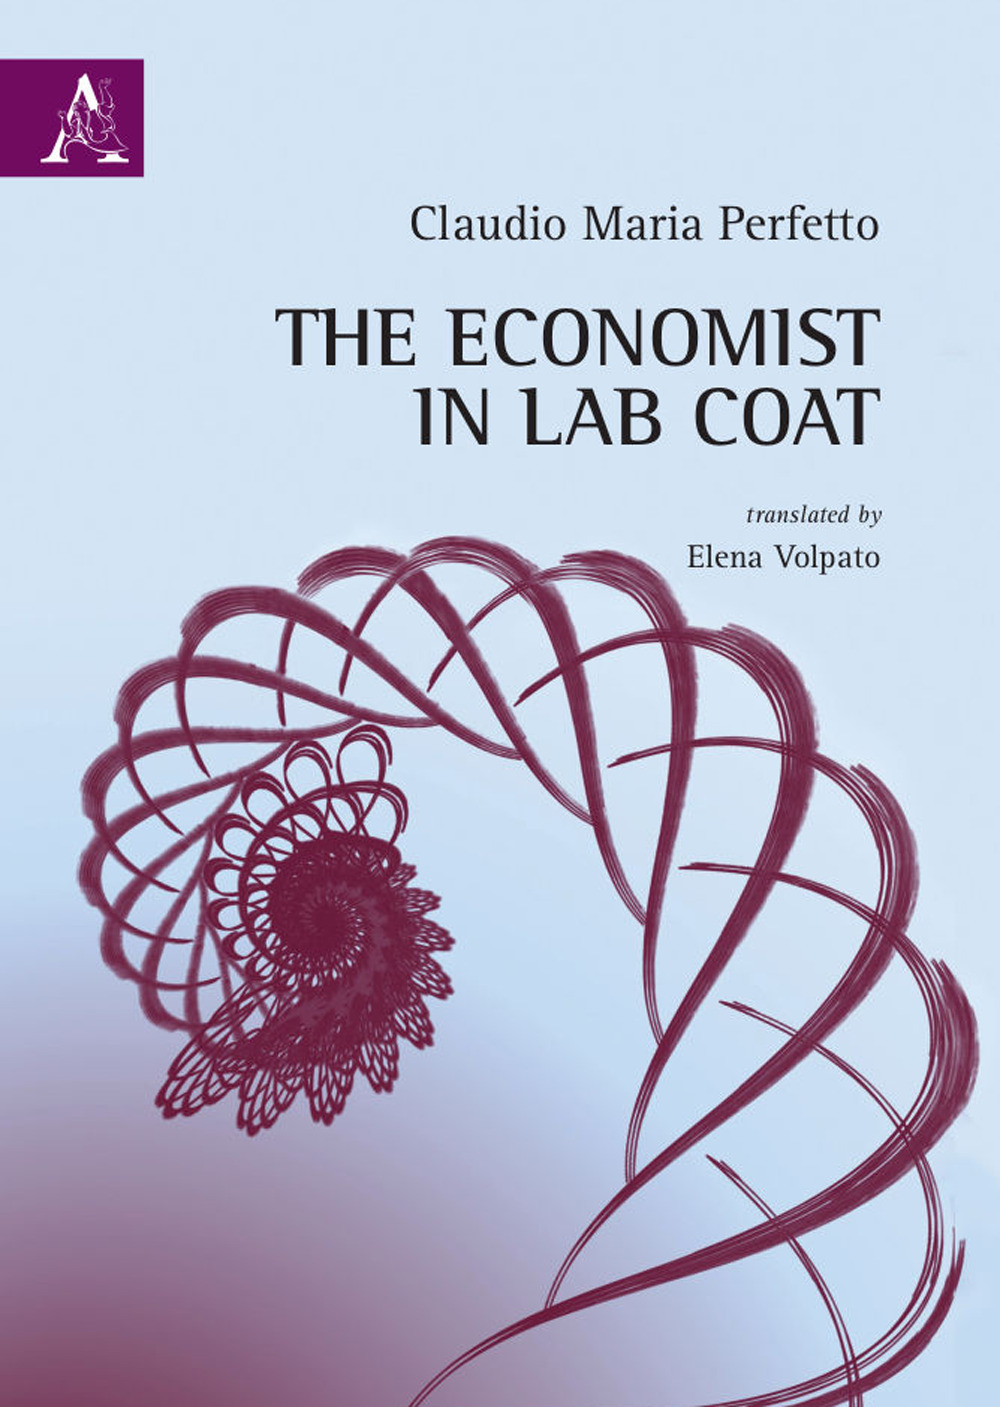 The economist in lab coat